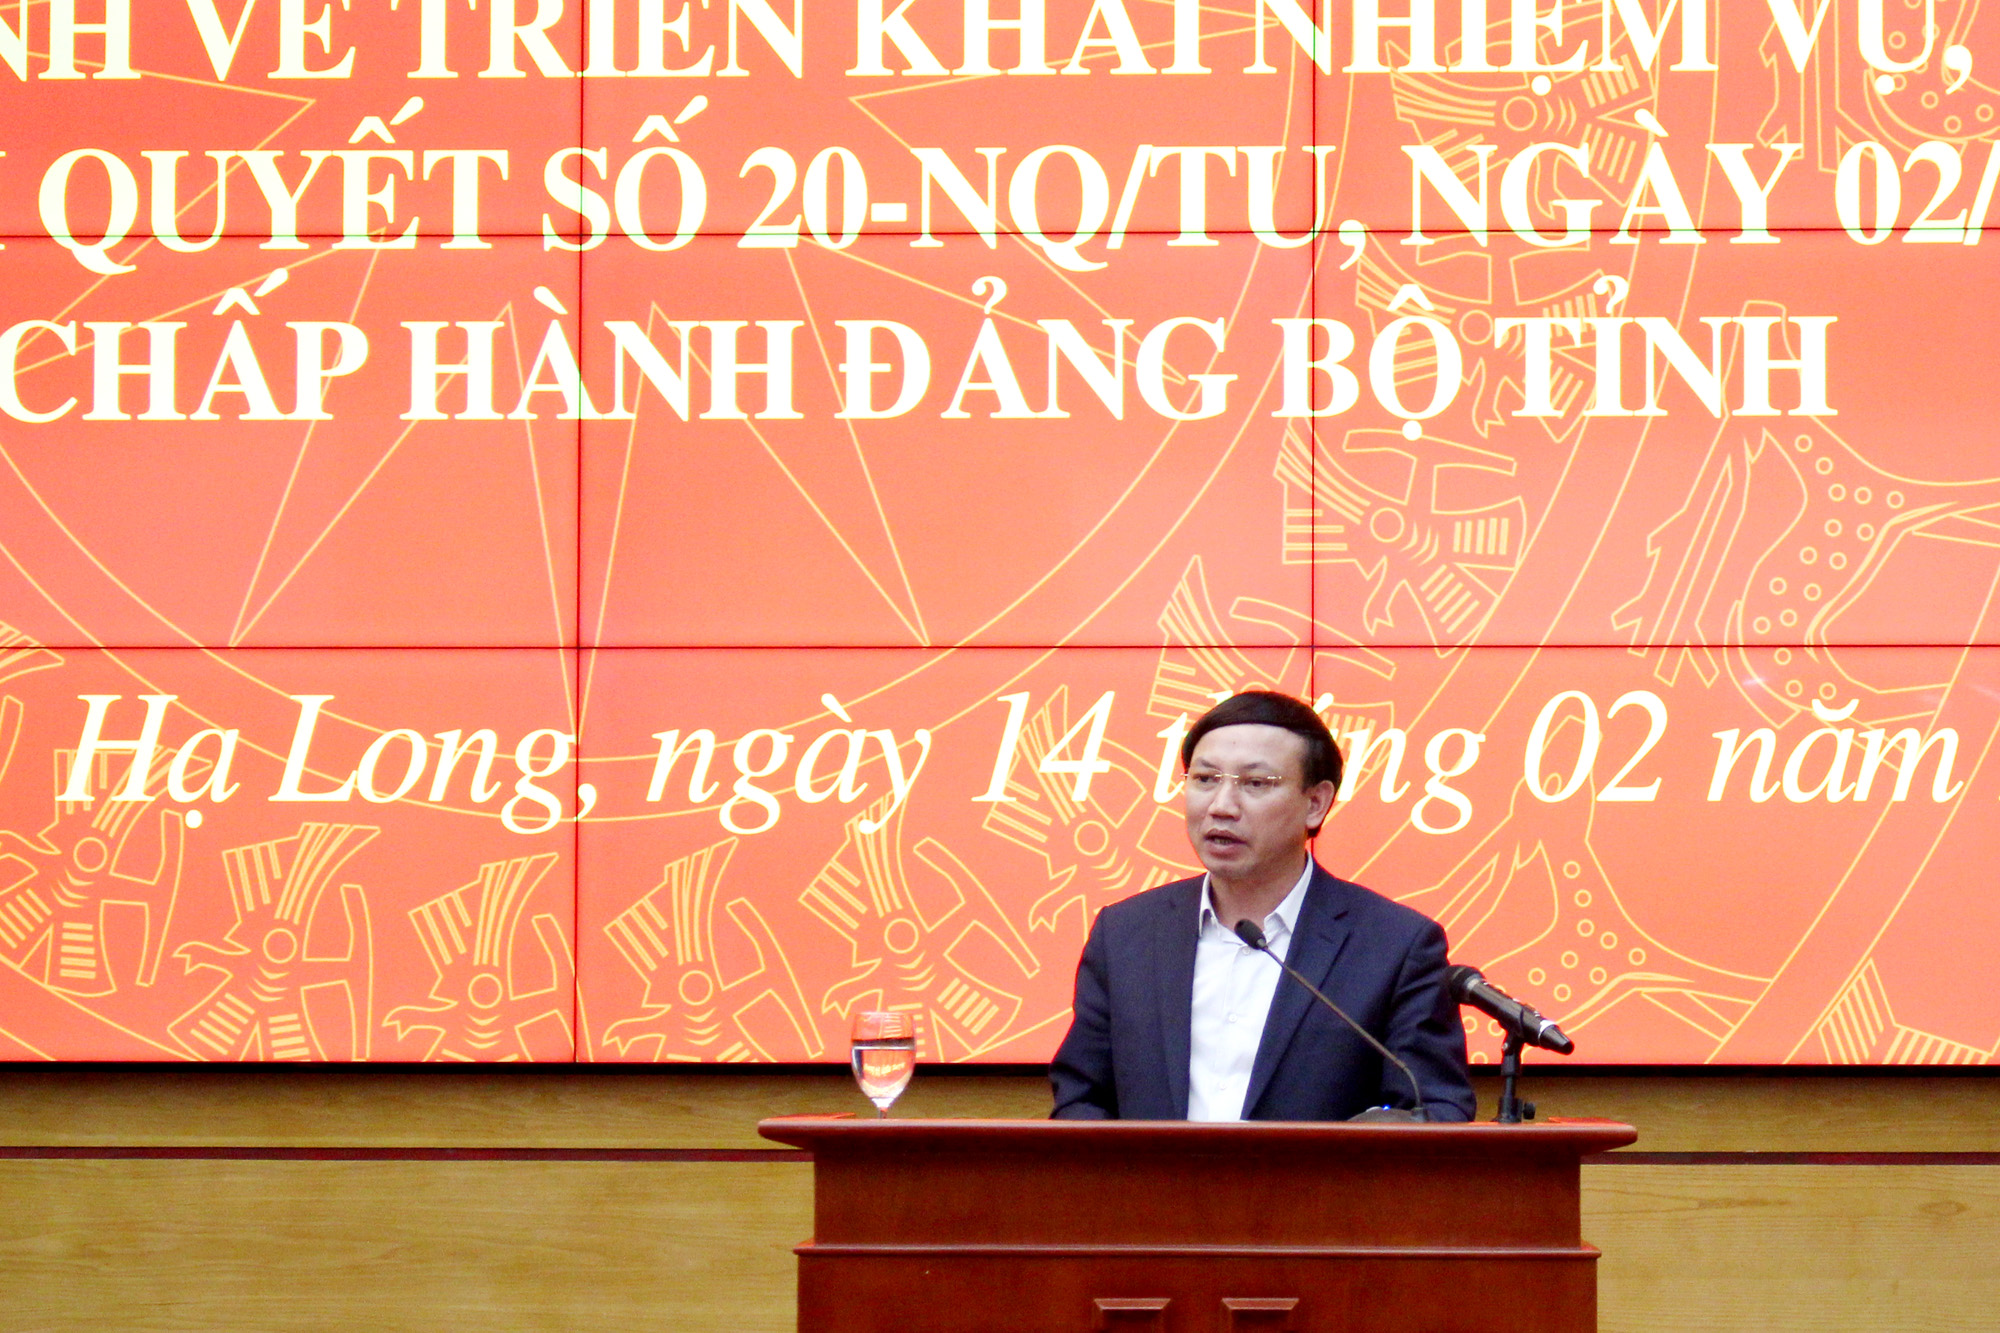 Đồng chí Nguyễn Xuân Ký, Bí thư Tỉnh ủy, Chủ tịch HĐND tỉnh, kết luận buổi làm việc.